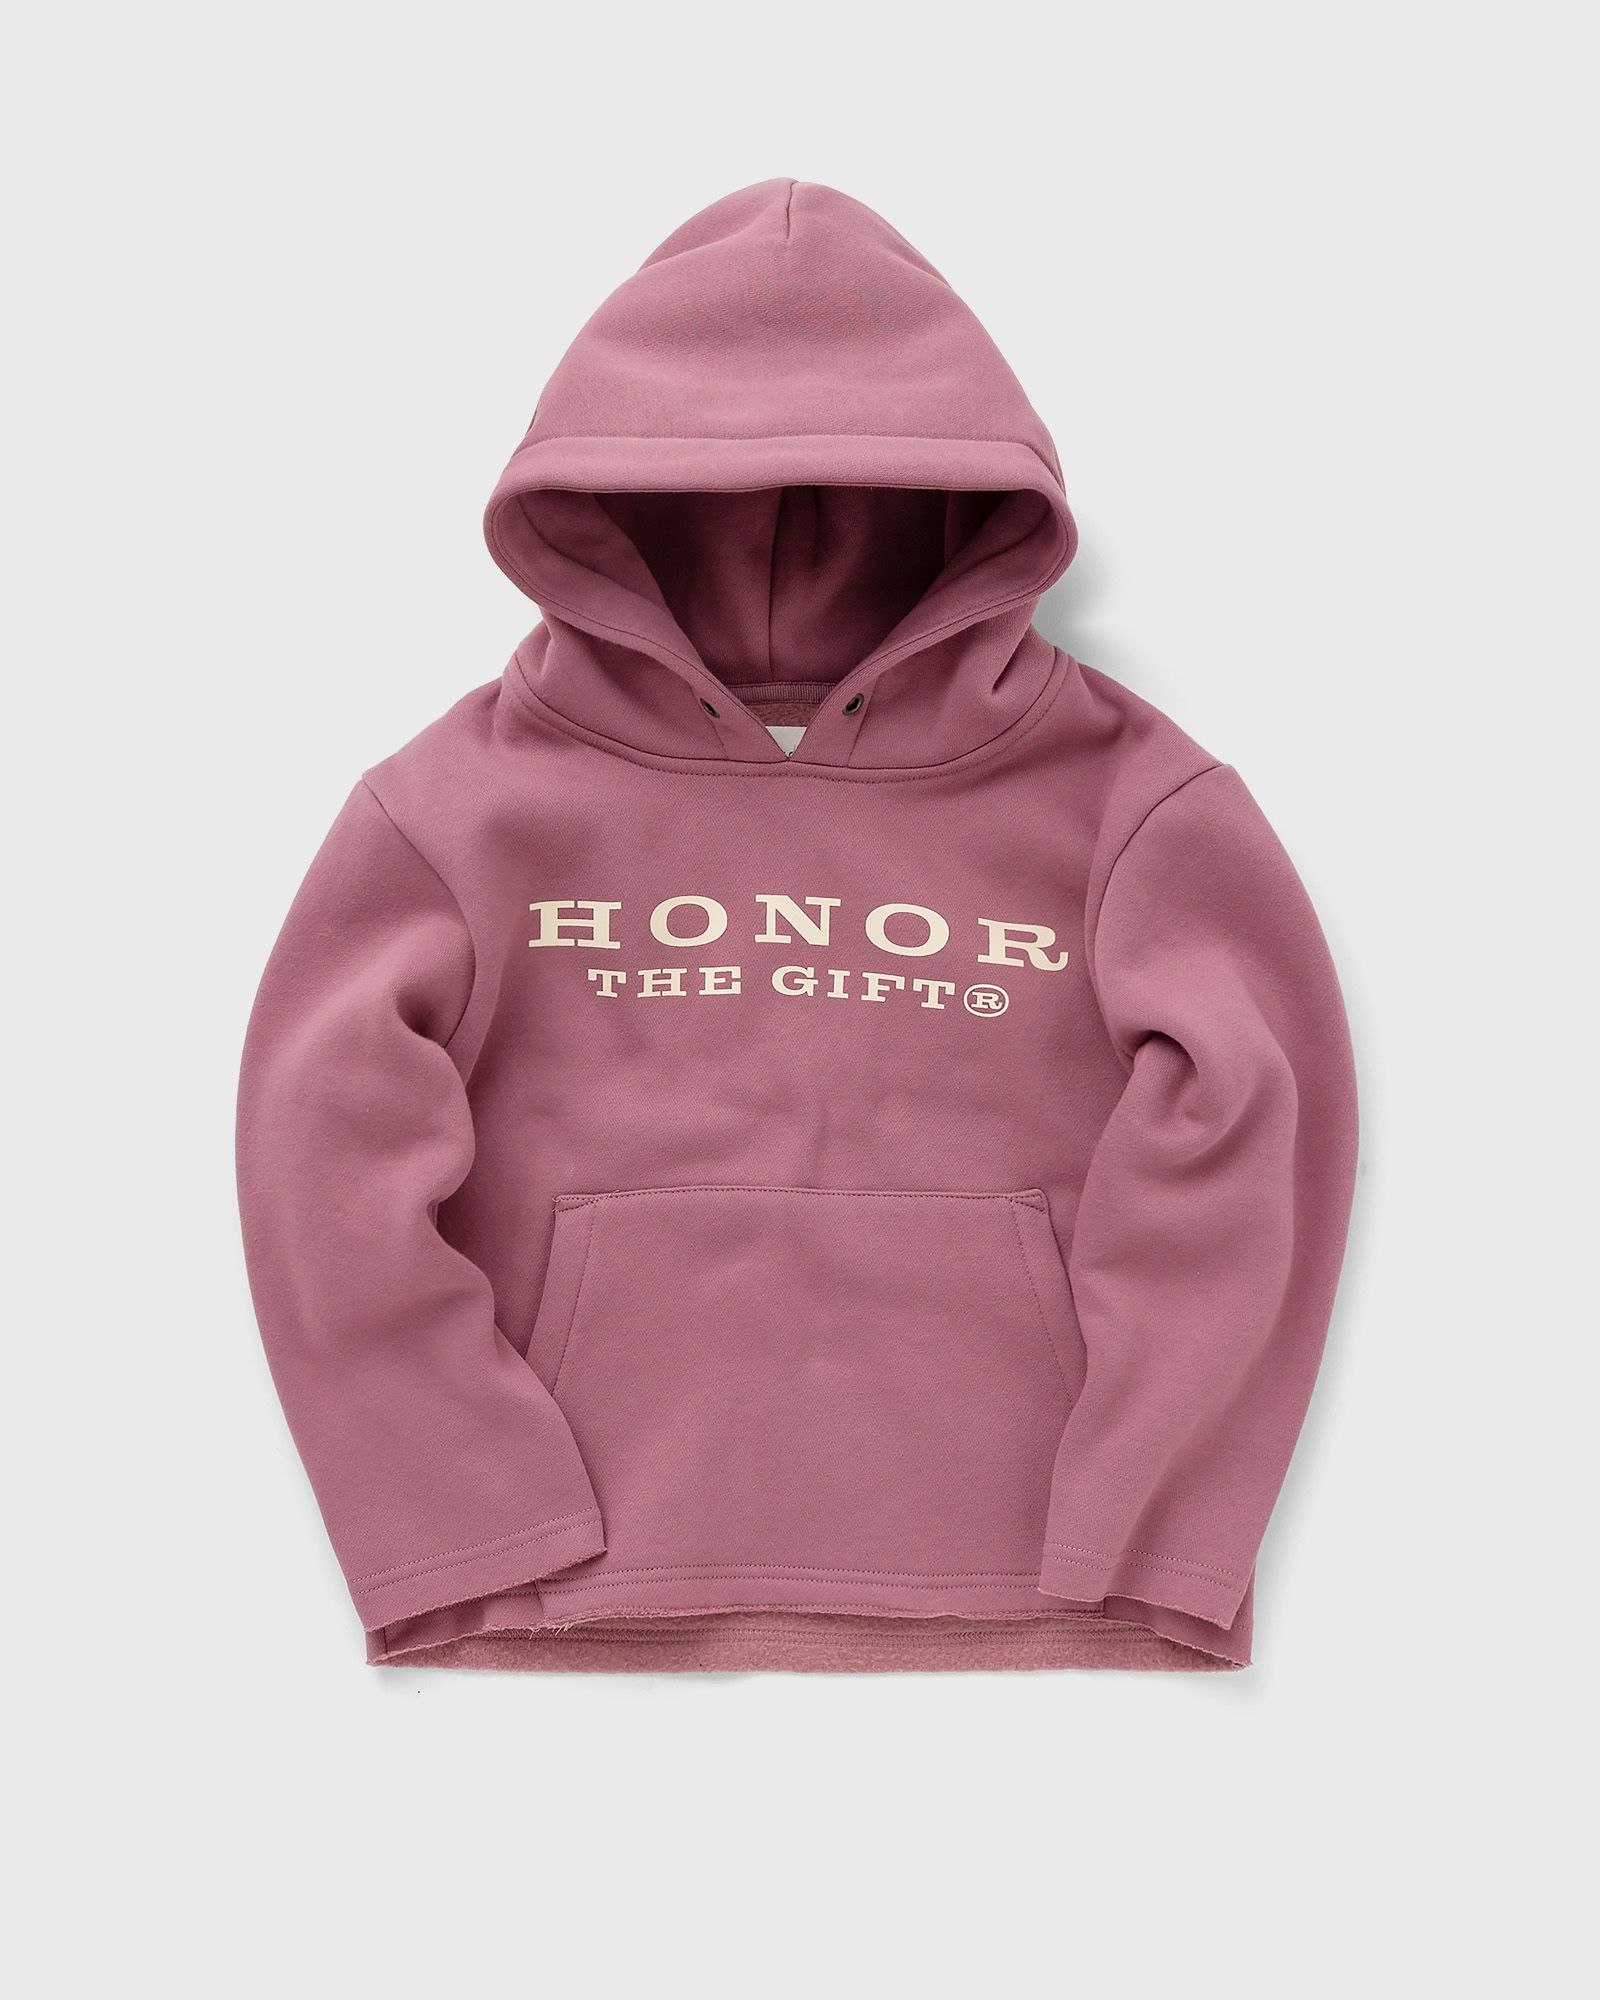 Honor The Gift - hoodie  hoodies pink in größe:age 2-4 | eu 92-104